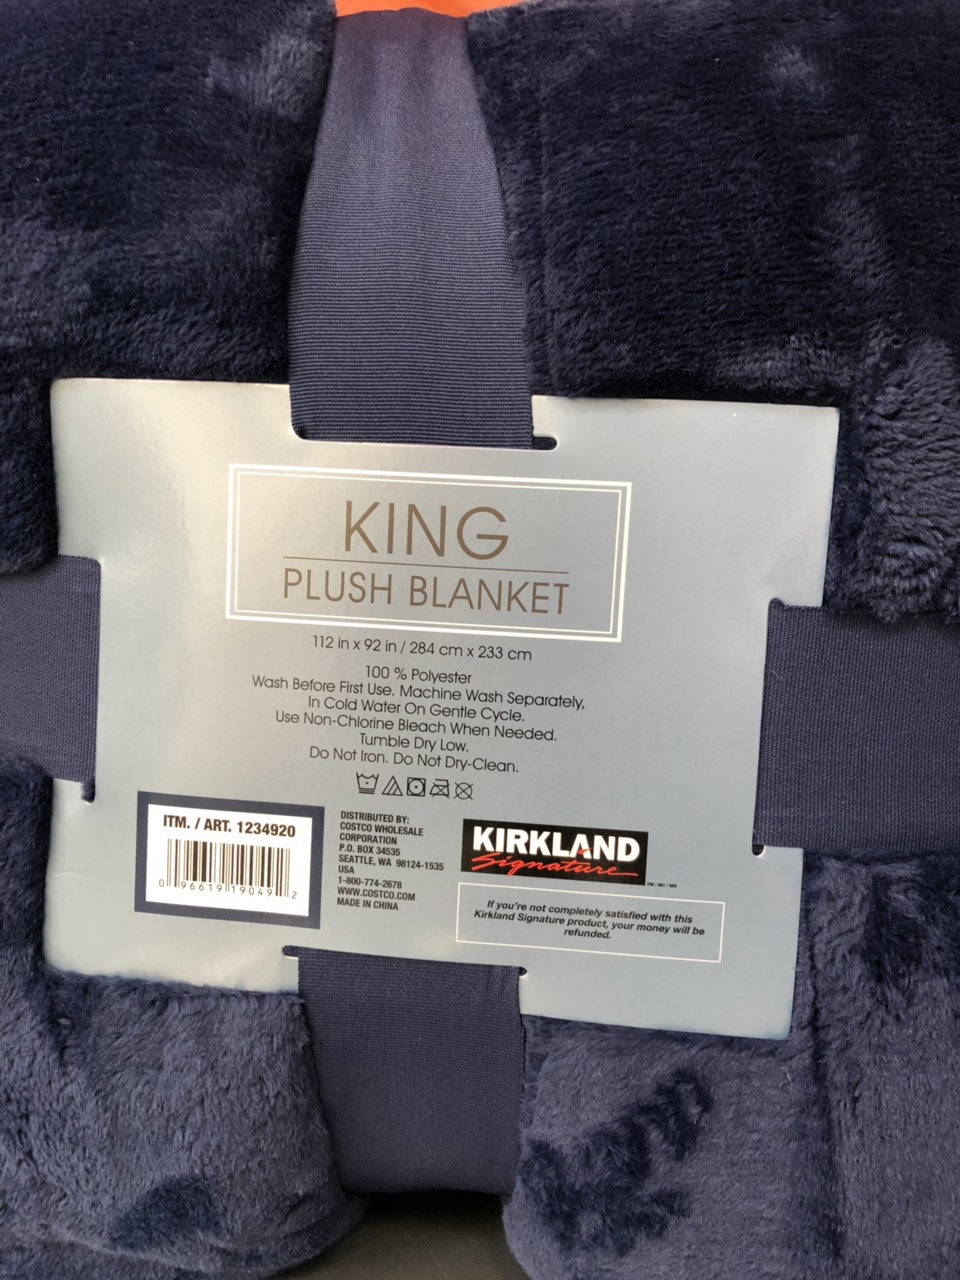 Chăn lông cừu KirkLand Plush Blanket King 284cm x 233cm của Mỹ